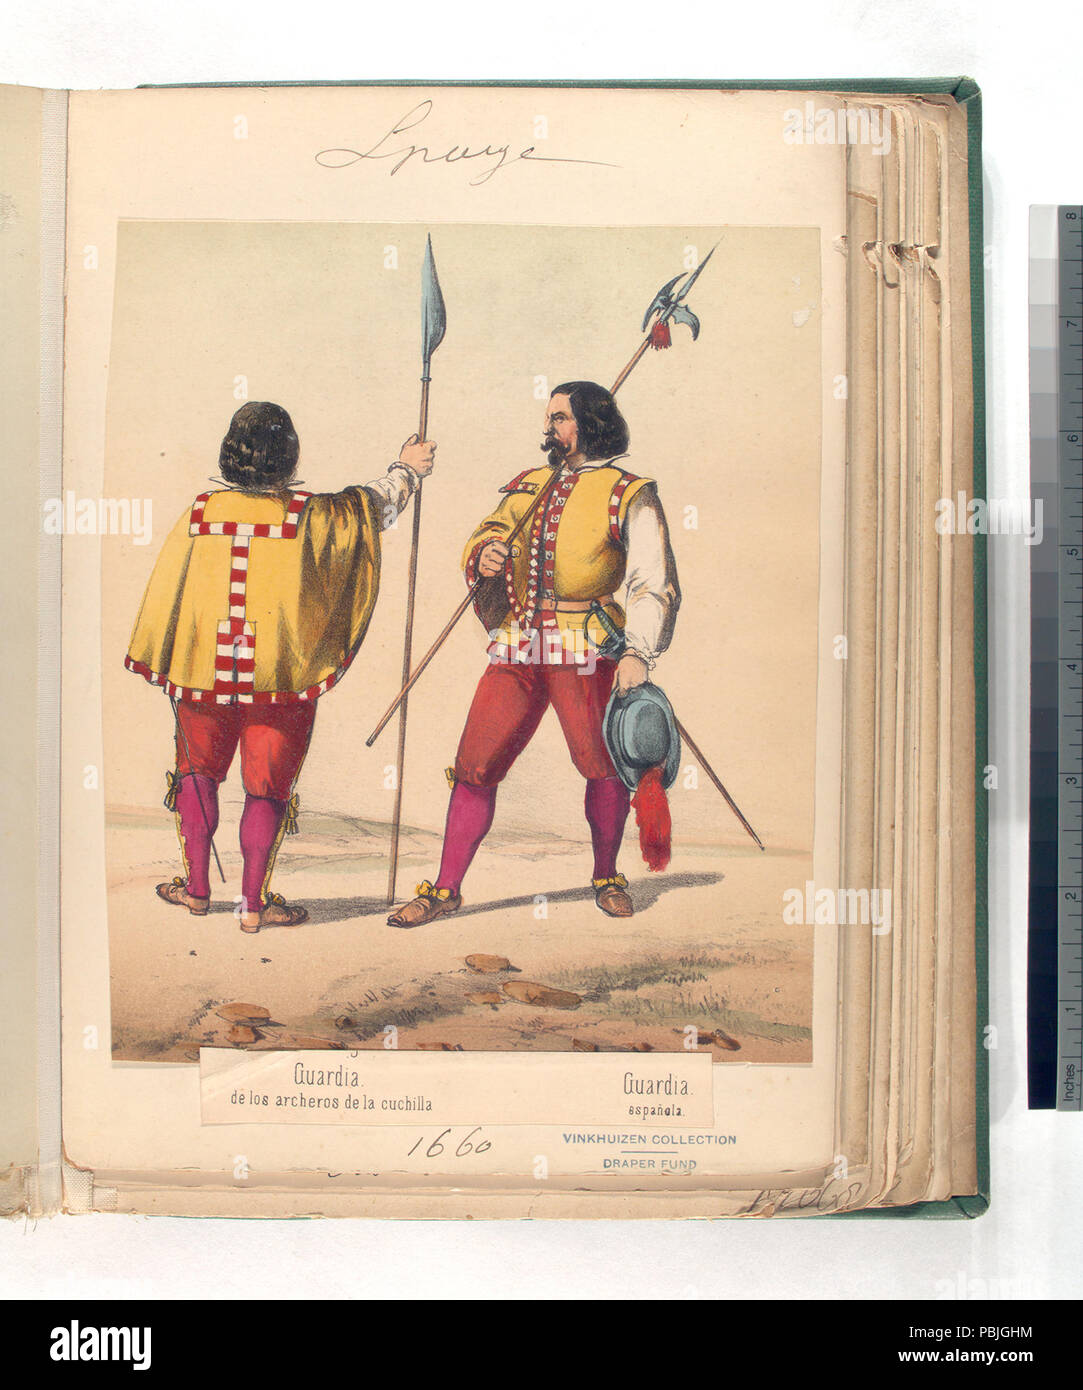 734 Guardia de los archeros de la cuchilla; Guardia española. (1660) (NYPL b14896507-87485) Stock Photo